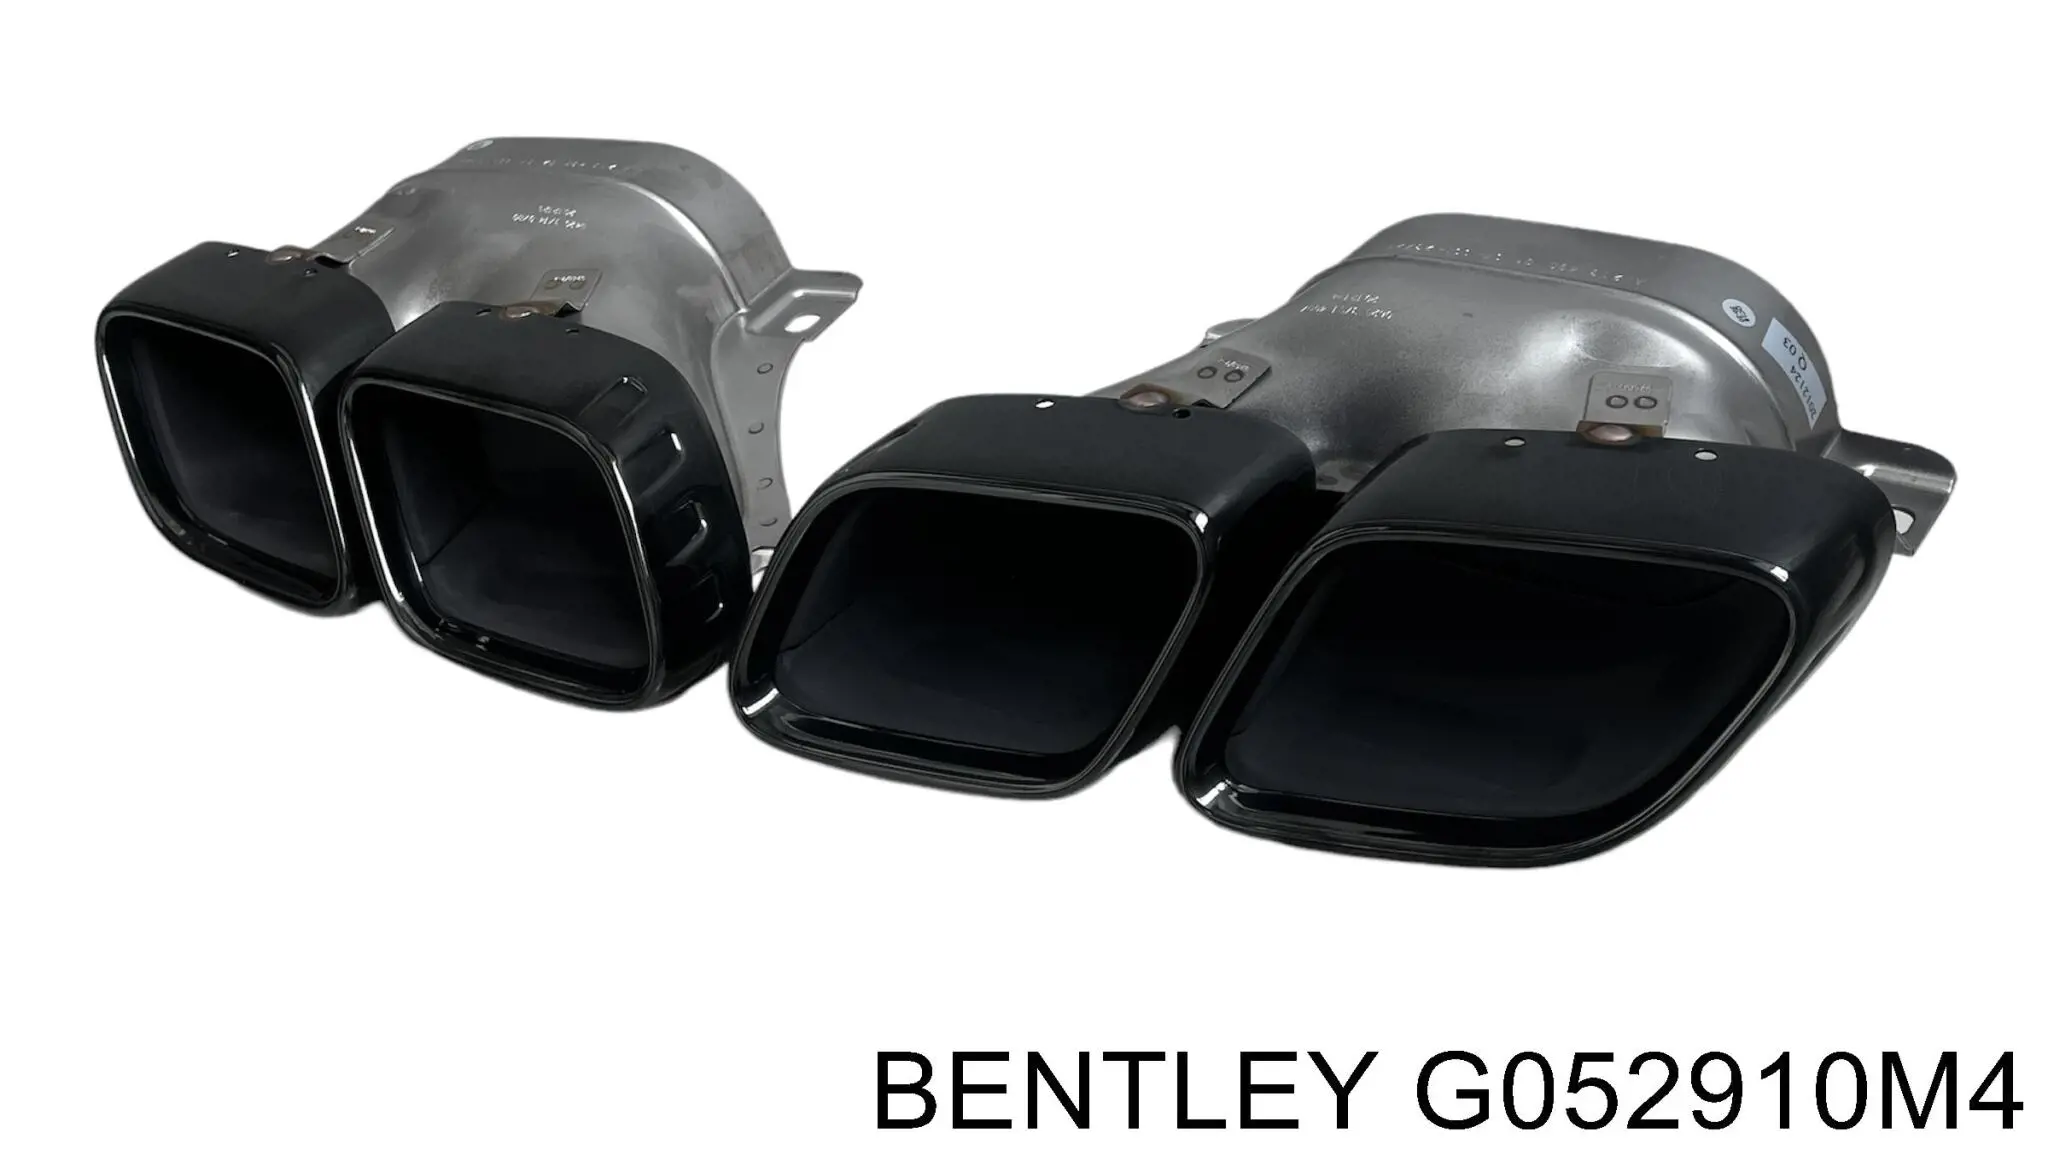 G052910M4 Bentley fluido para la neutralización de los gases de escape, urea